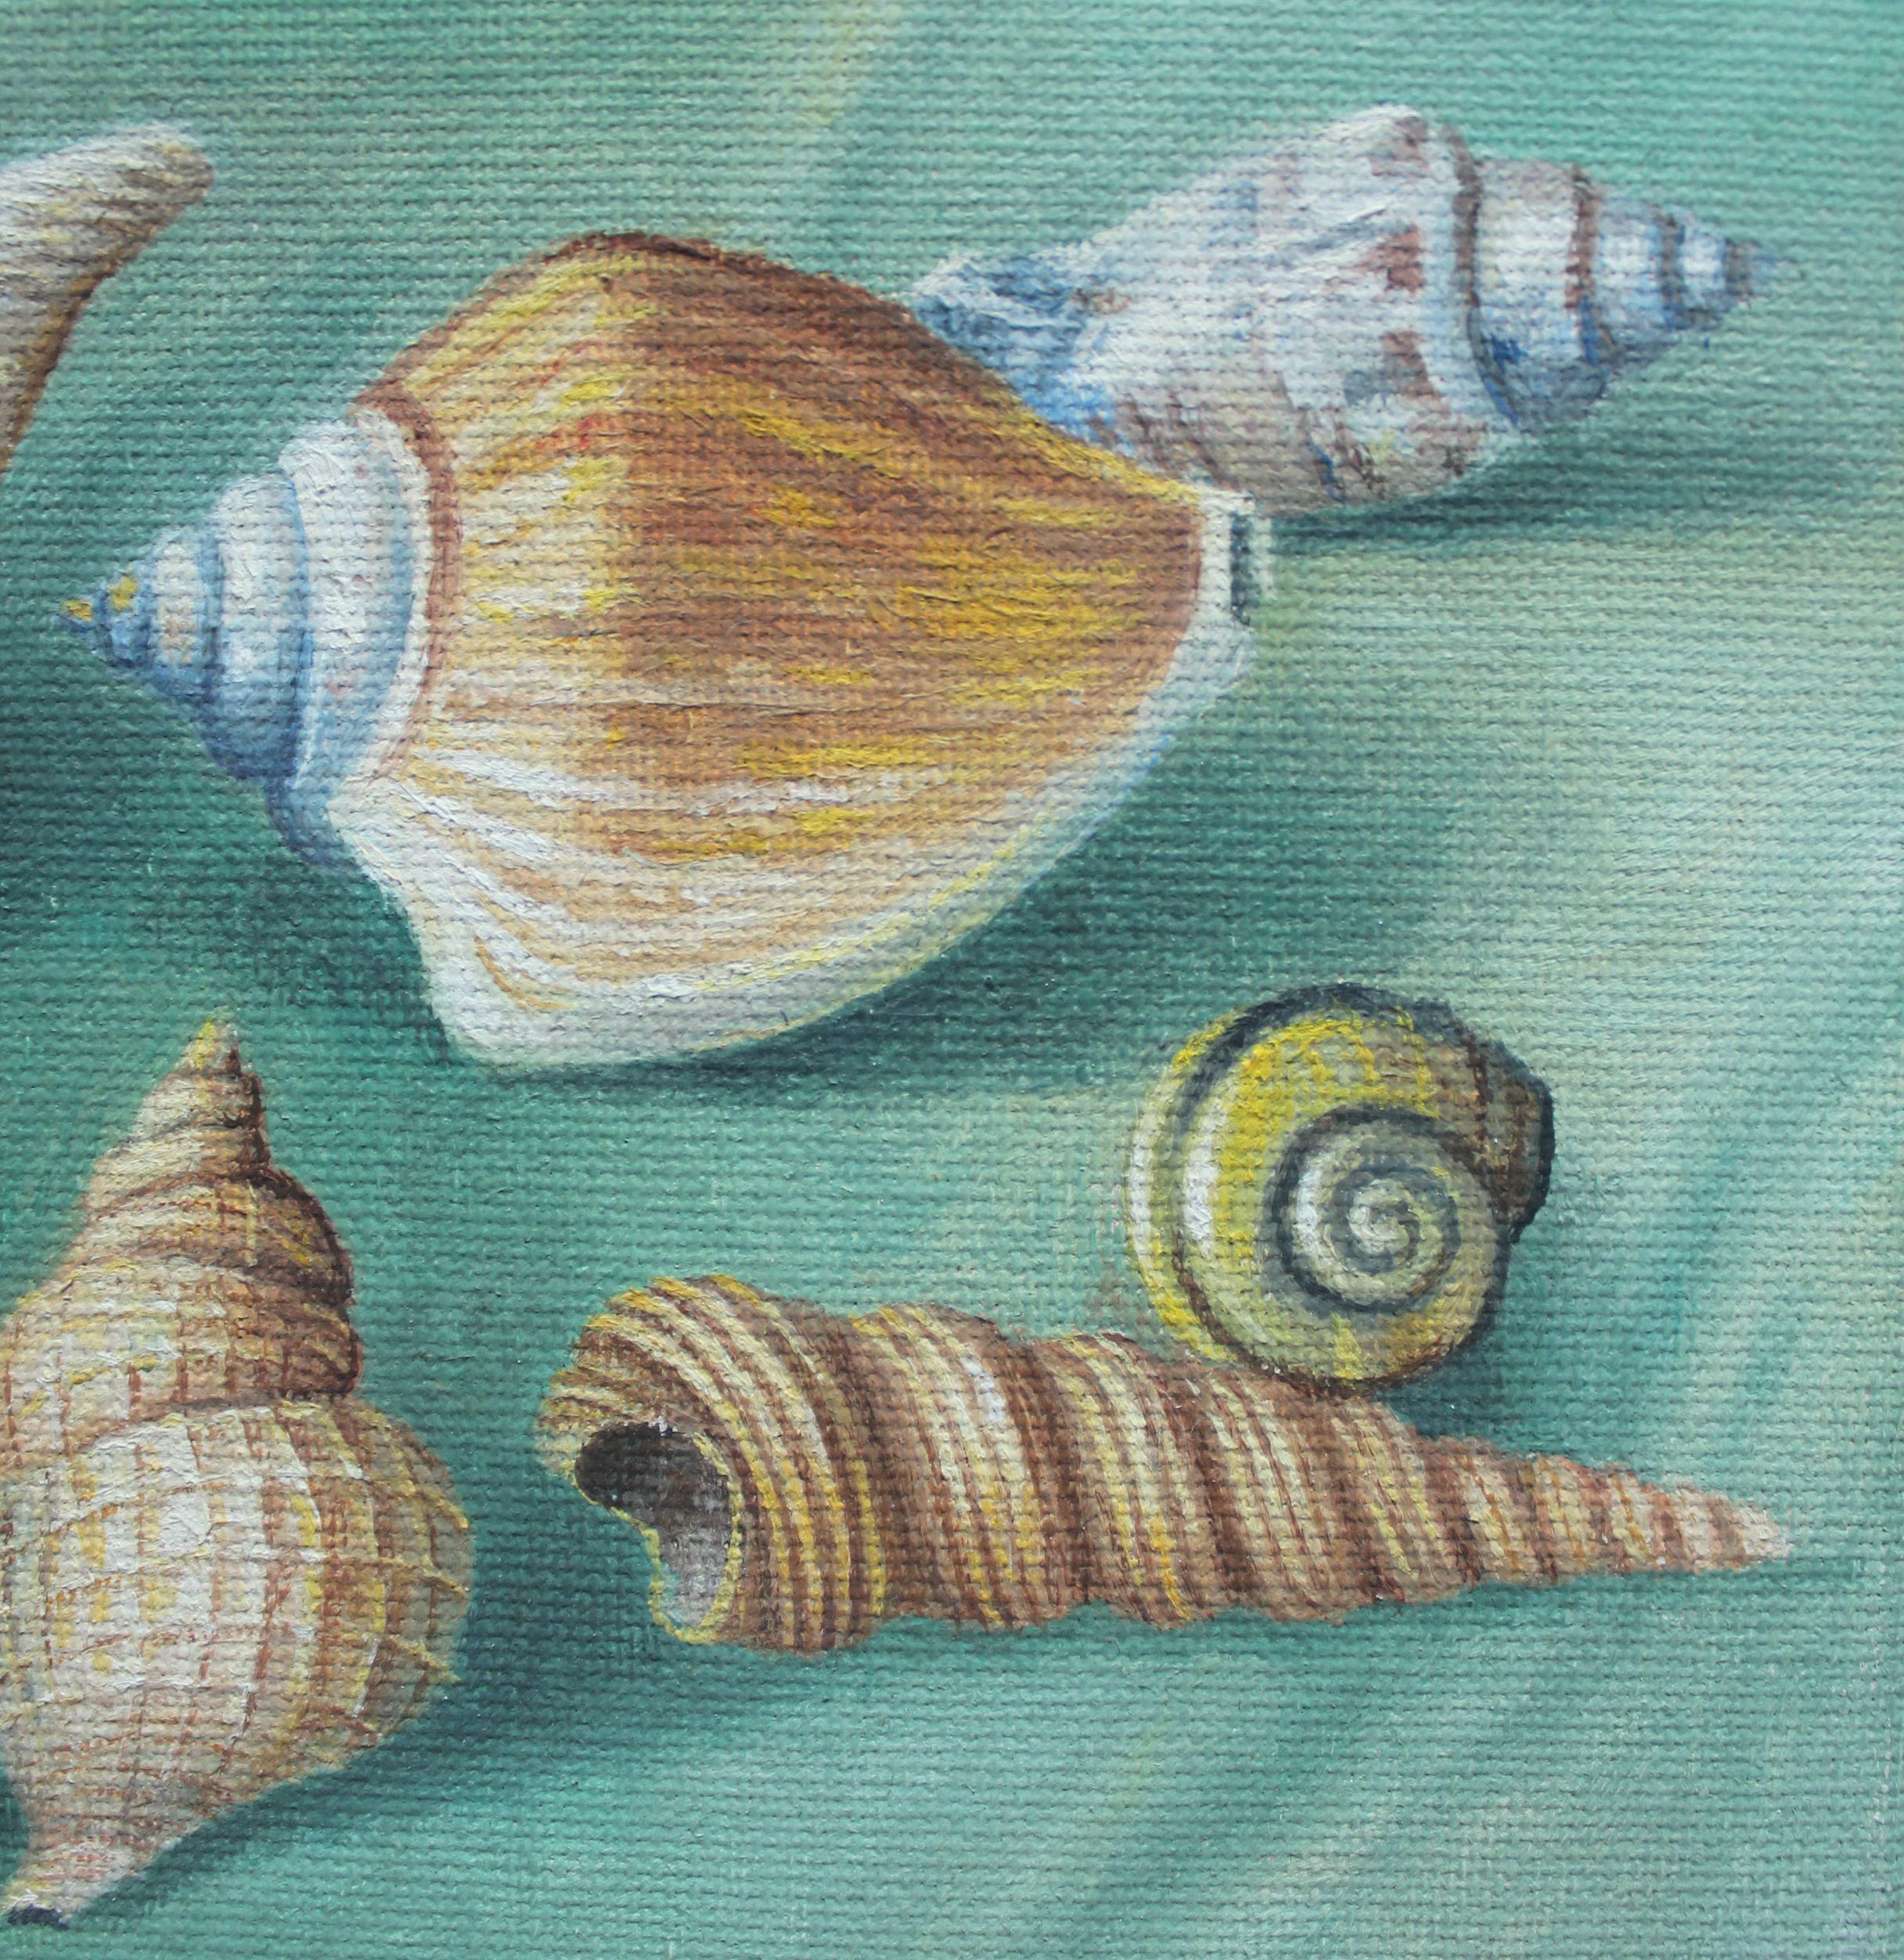 Shell Shells - Zeitgenössisches figuratives Ölgemälde, Stillleben, gedämpfte Farben, Realismus – Painting von Zbigniew Wozniak